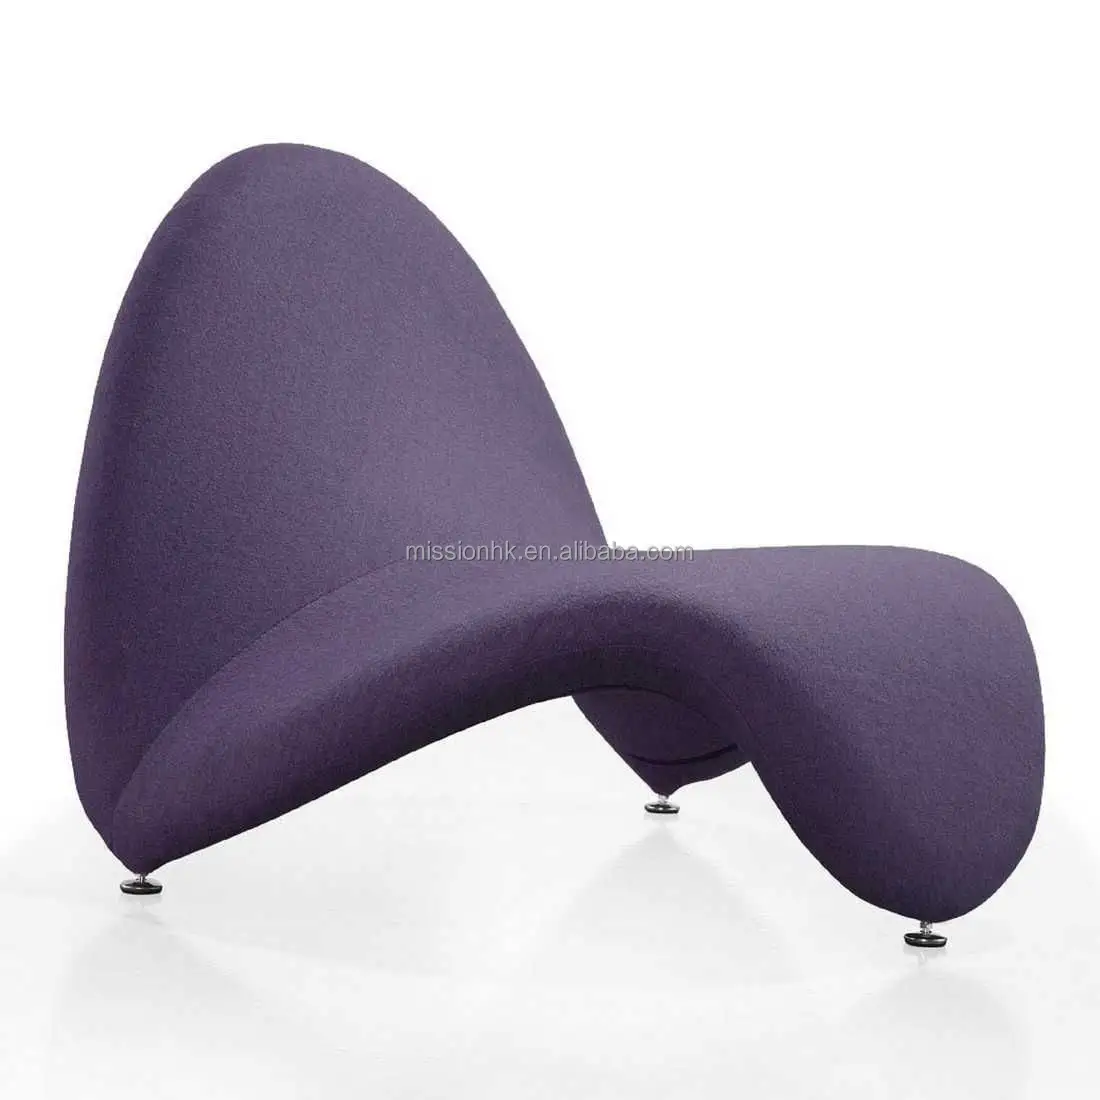 כיסא פנאי מעצב בית מסגרת ריהוט חוץ בד קטיפה מודרני הדגשה כיסא להירגע מתכת כסאות שכיבה מתכת פלדה